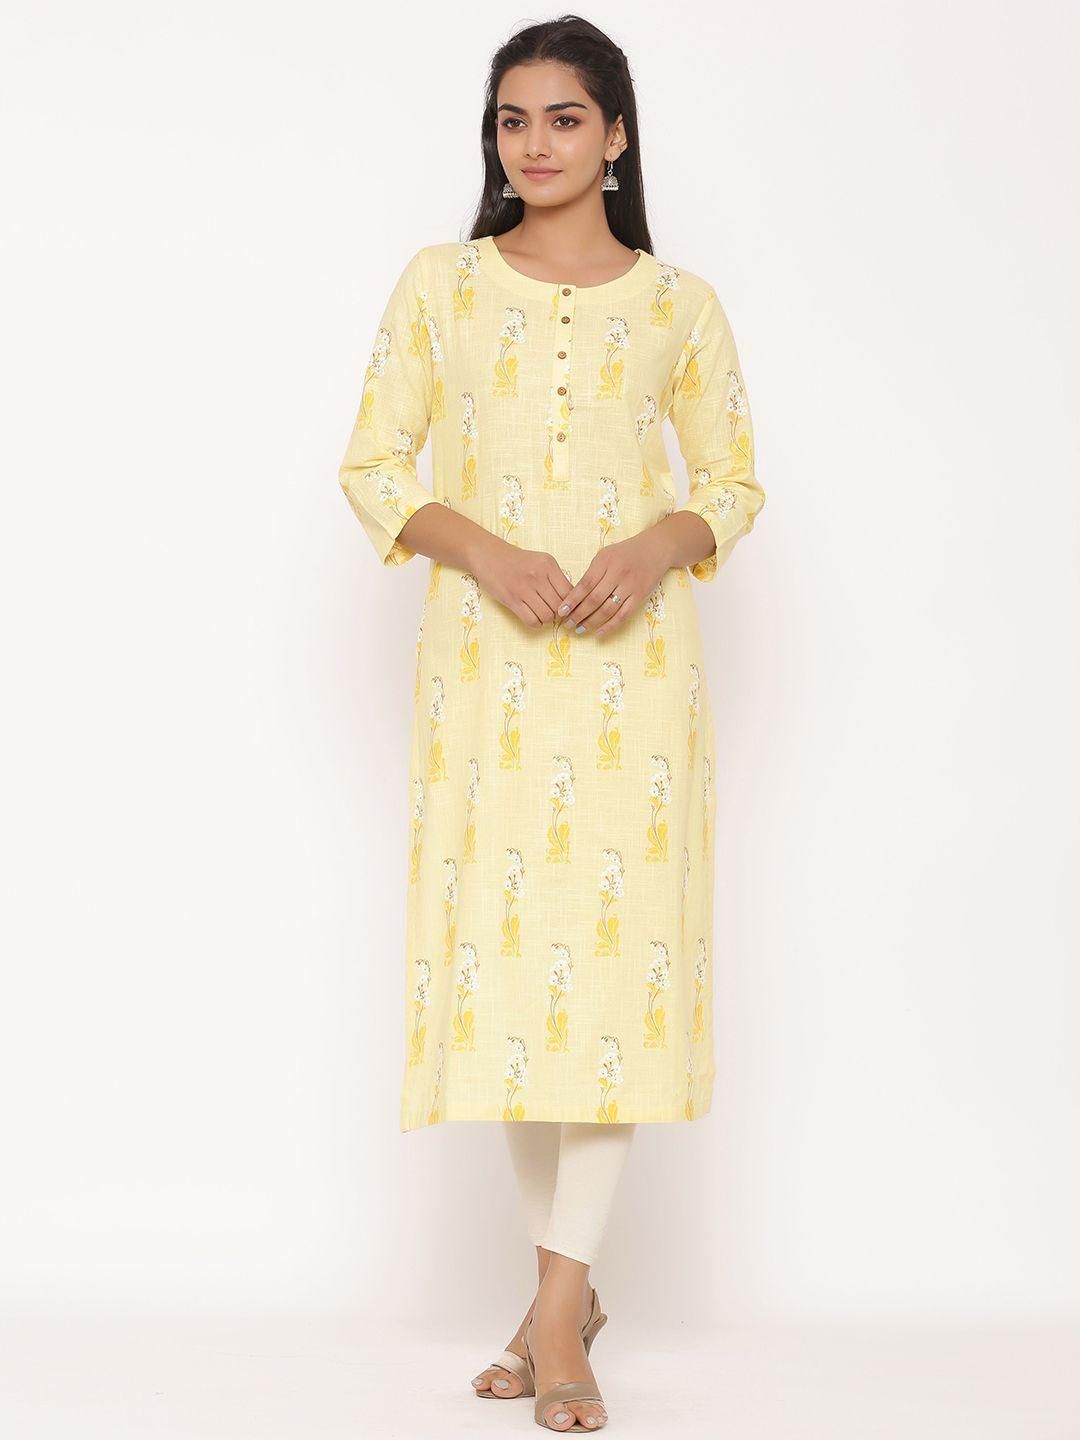 fabglobal women yellow & white printed straight kurta